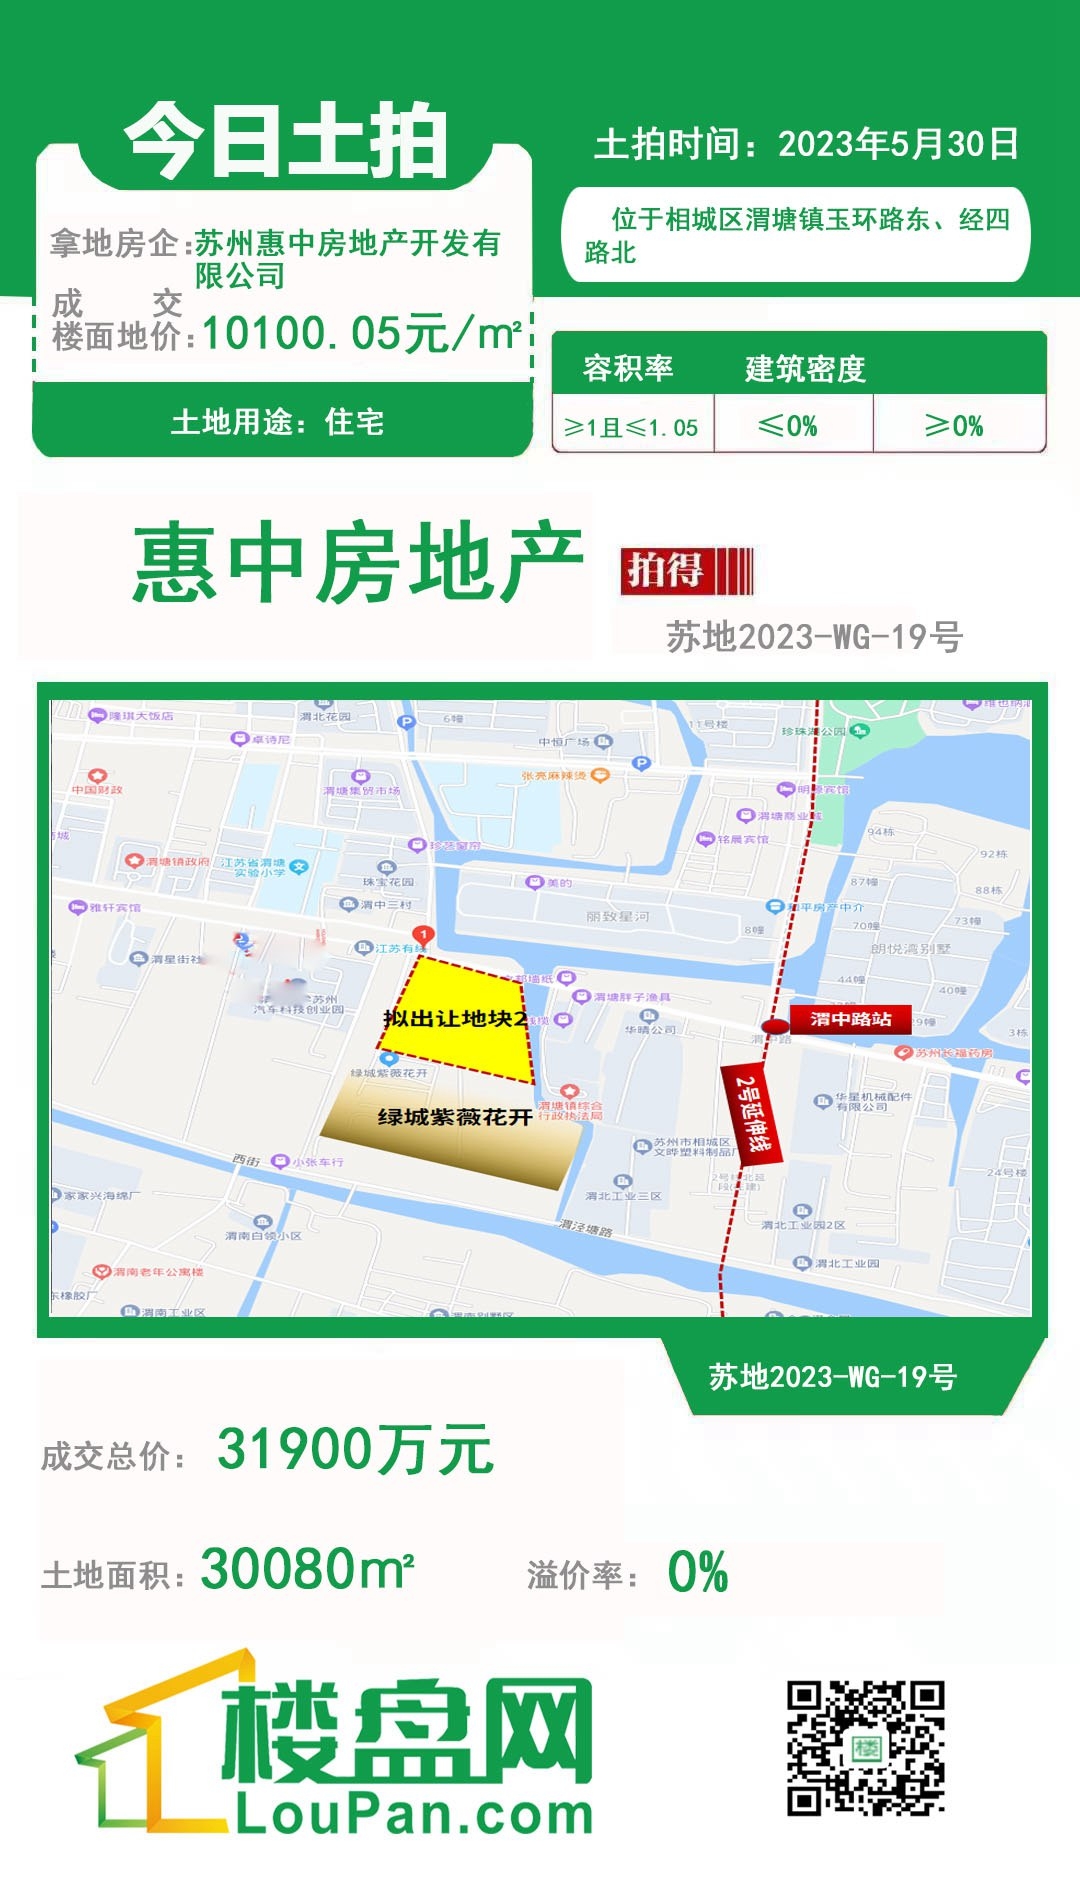 2023.5.30日苏地2023-WG-19号地块最终被苏州惠中房地产开发有限公司竞得！